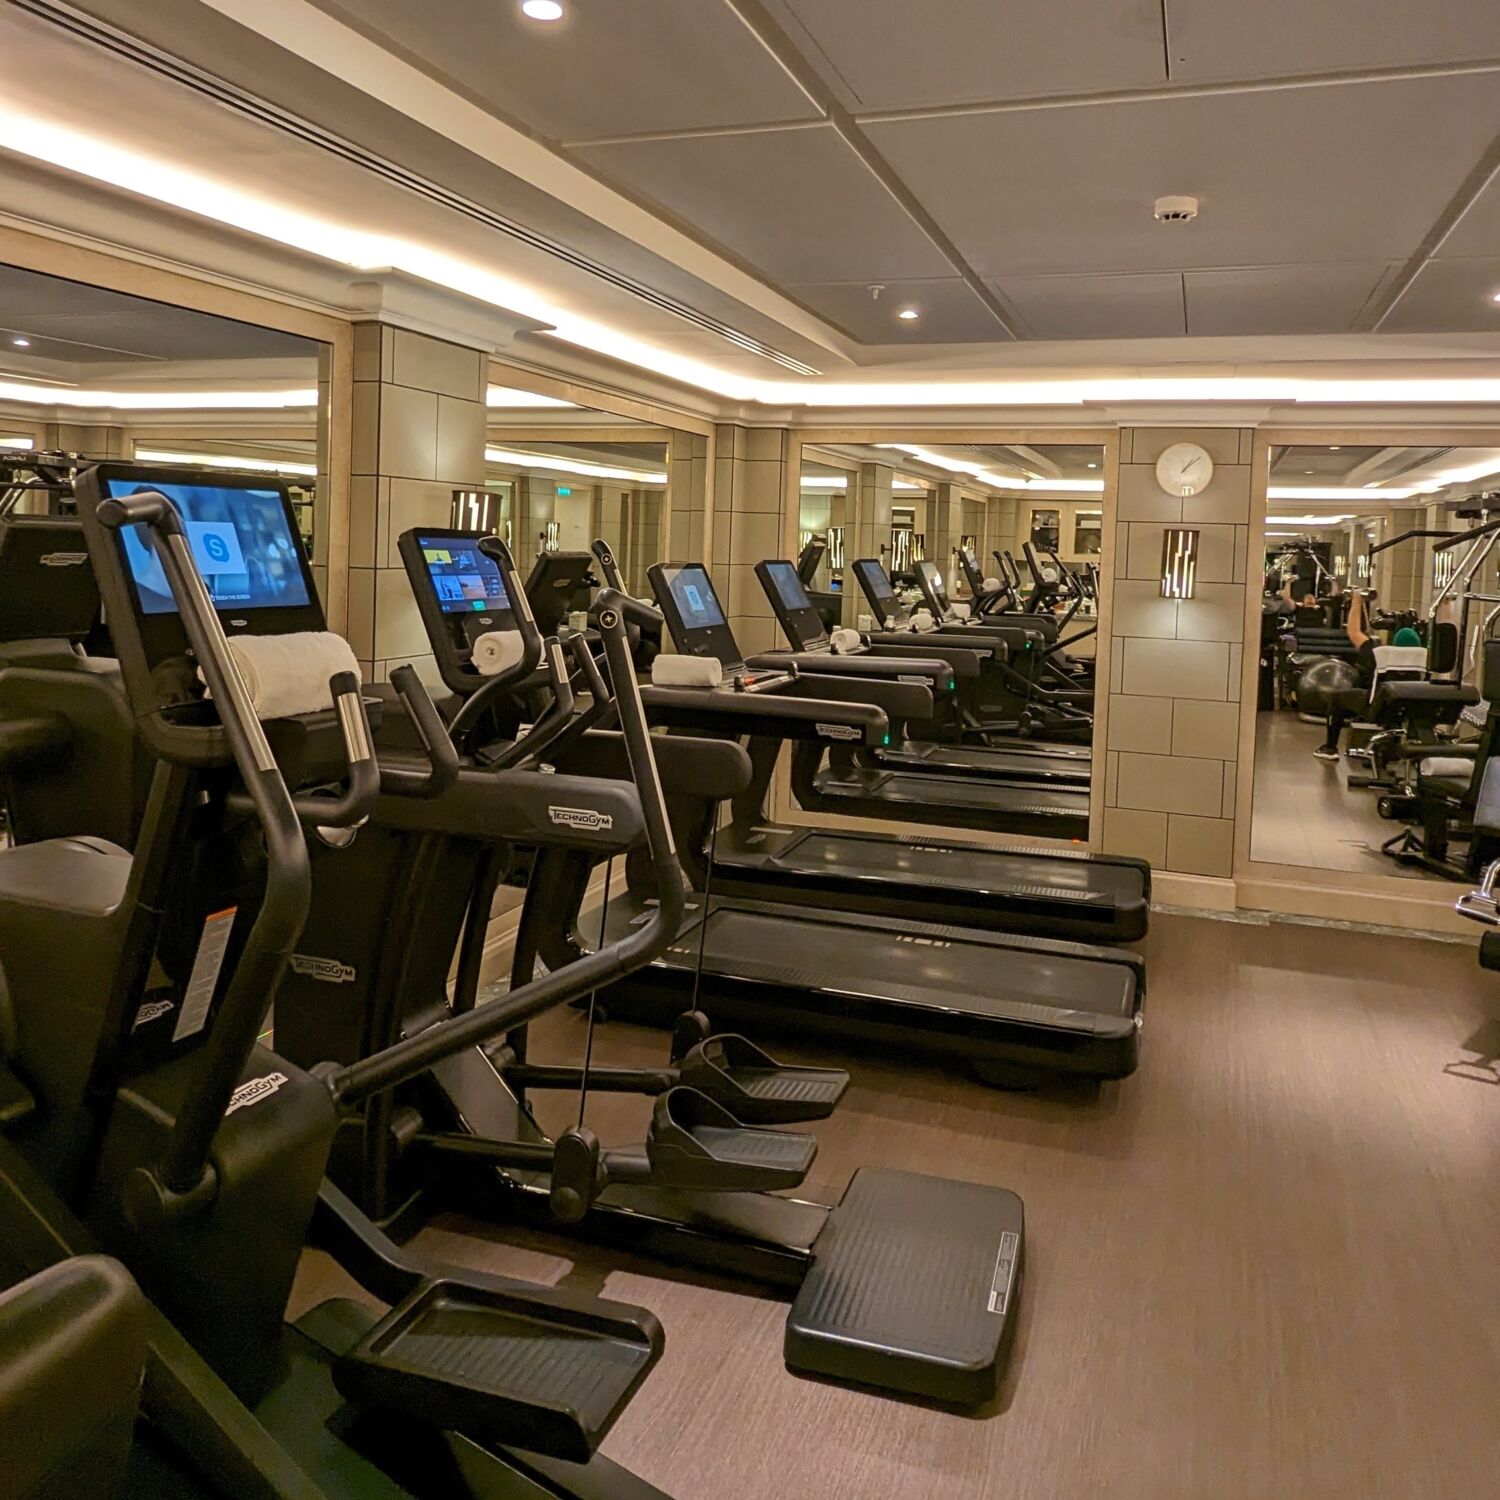 Hôtel de Crillon, A Rosewood Hotel Sense, A Rosewood Spa Fitness Studio